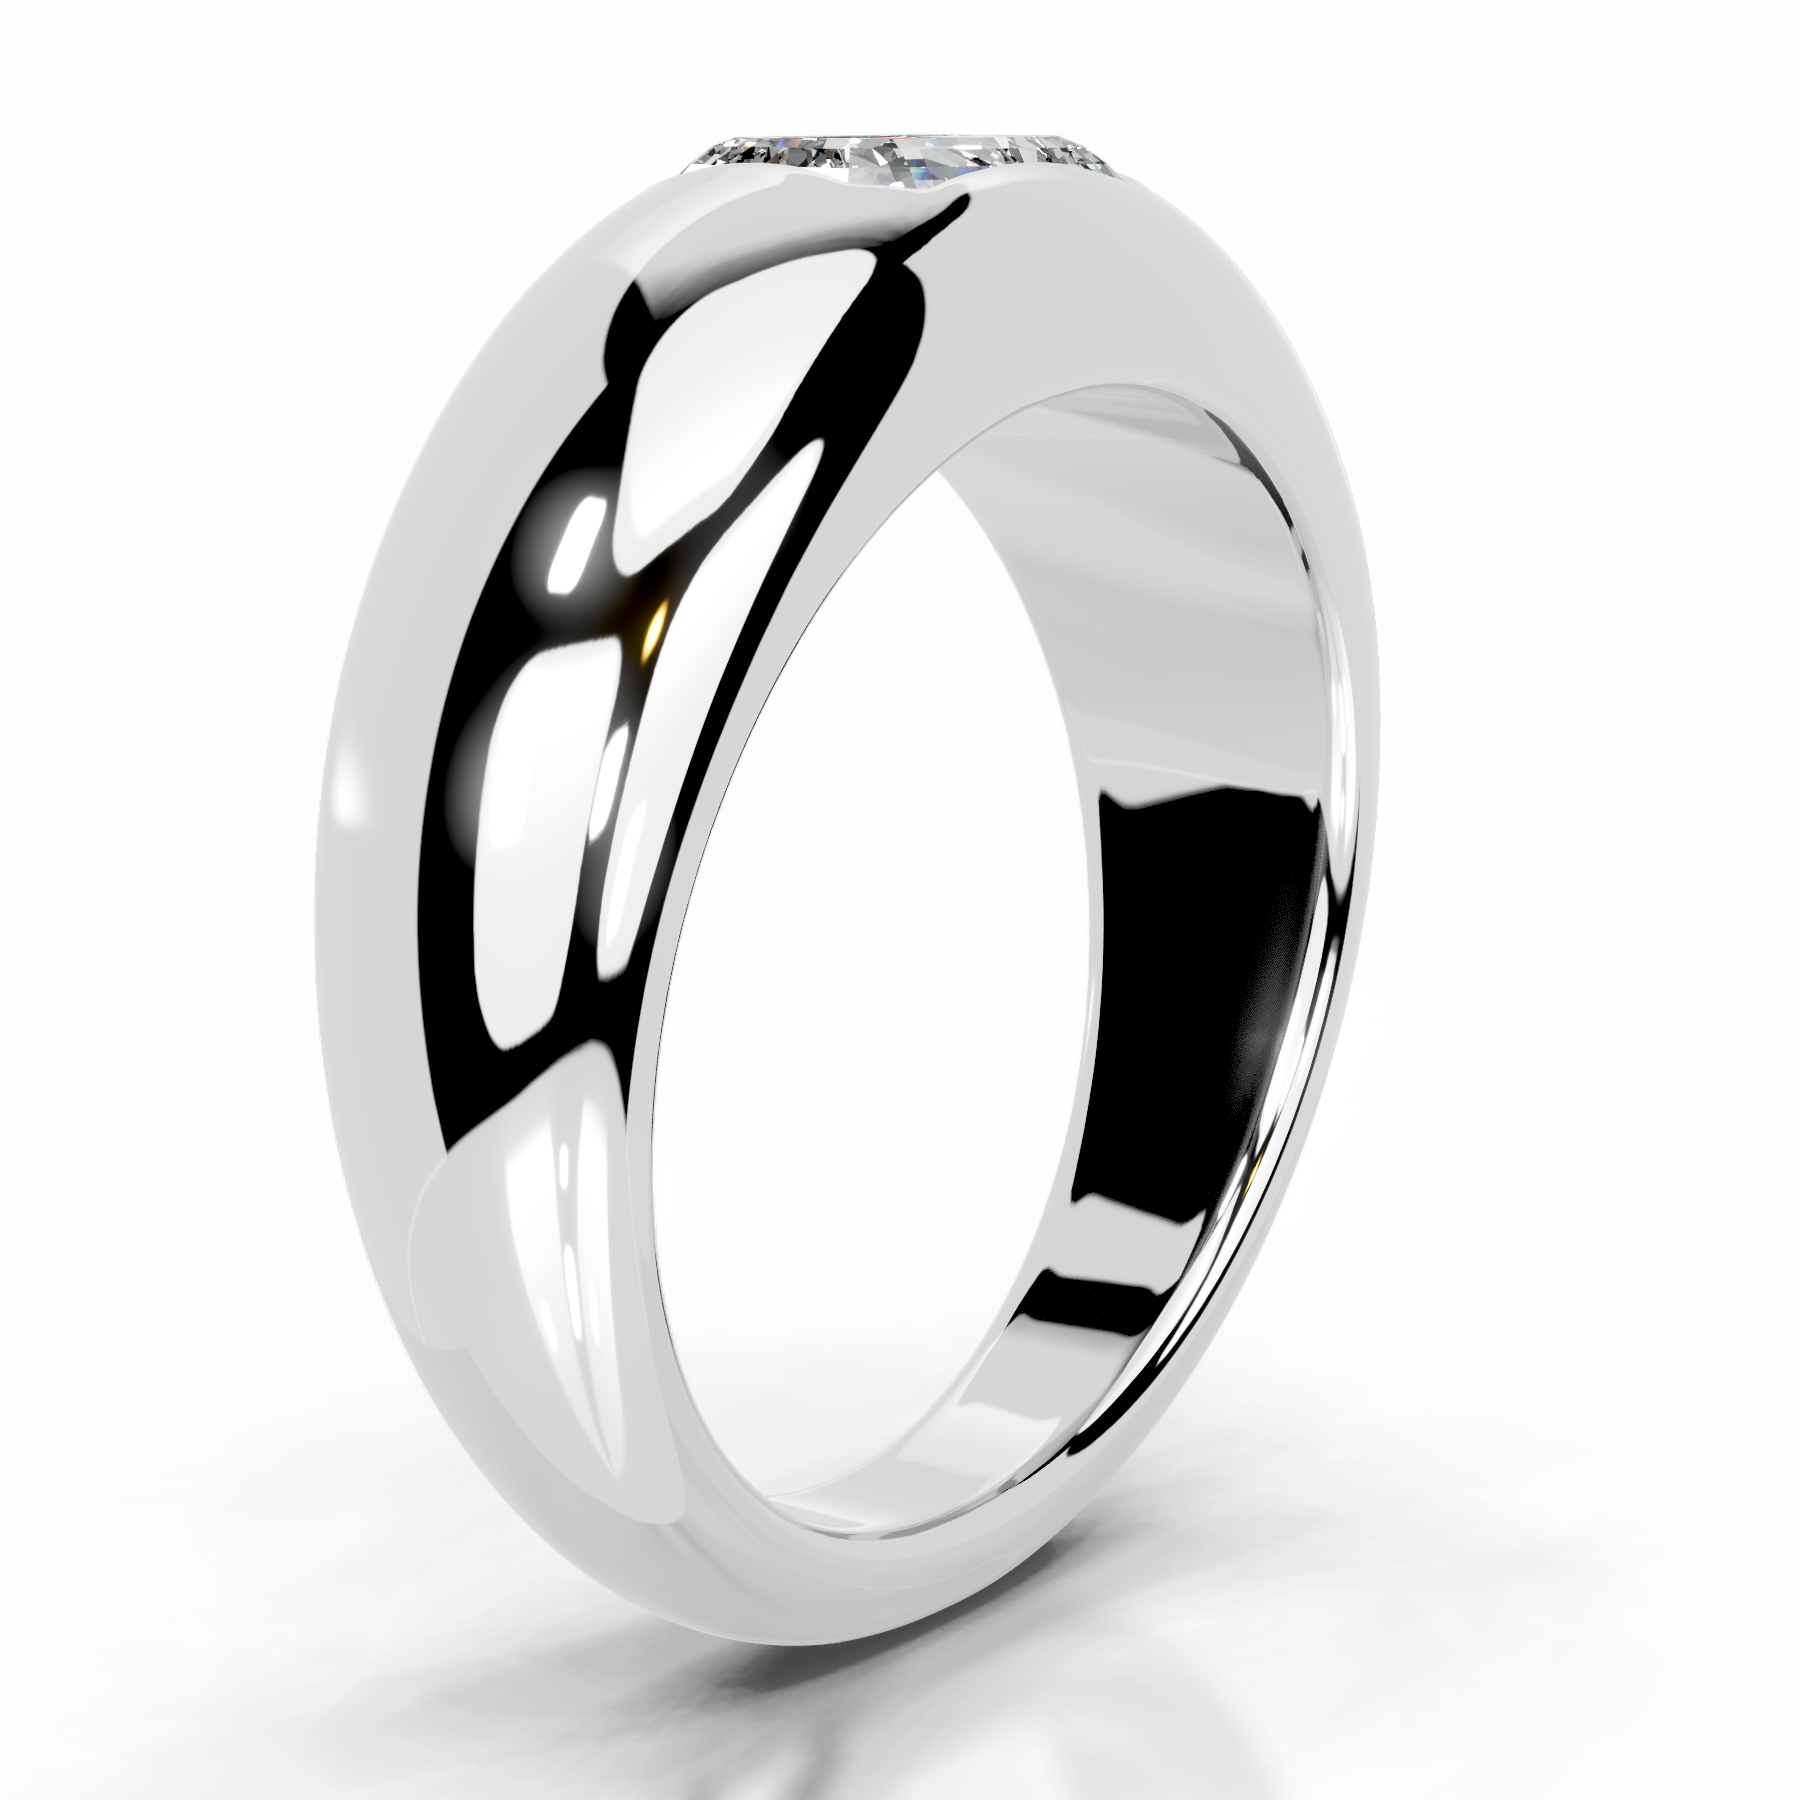 Amari Lab Grown Diamond Ring   (1 Carat) -18K White Gold